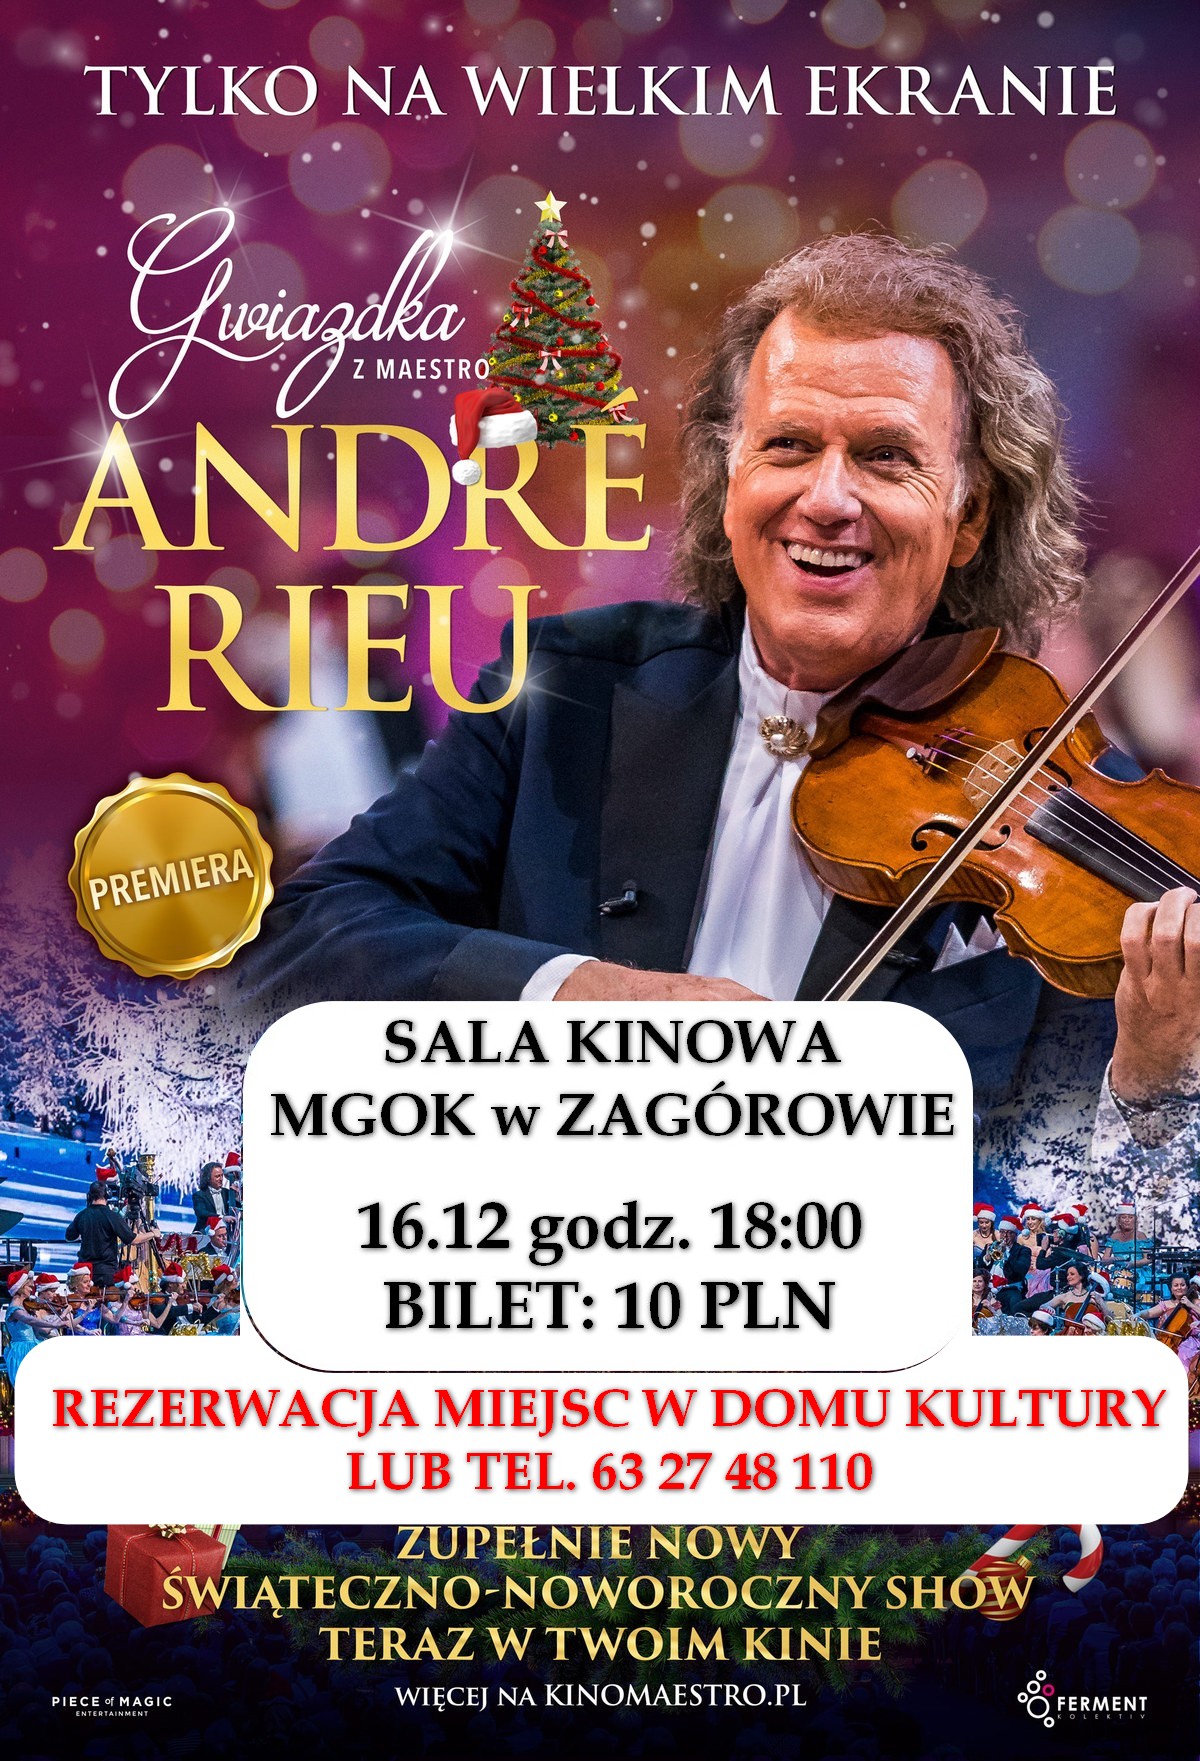 "Gwiazdka z maestro Andre Rieu" - ŚWIĘTO KINA W ZAGÓROWIE